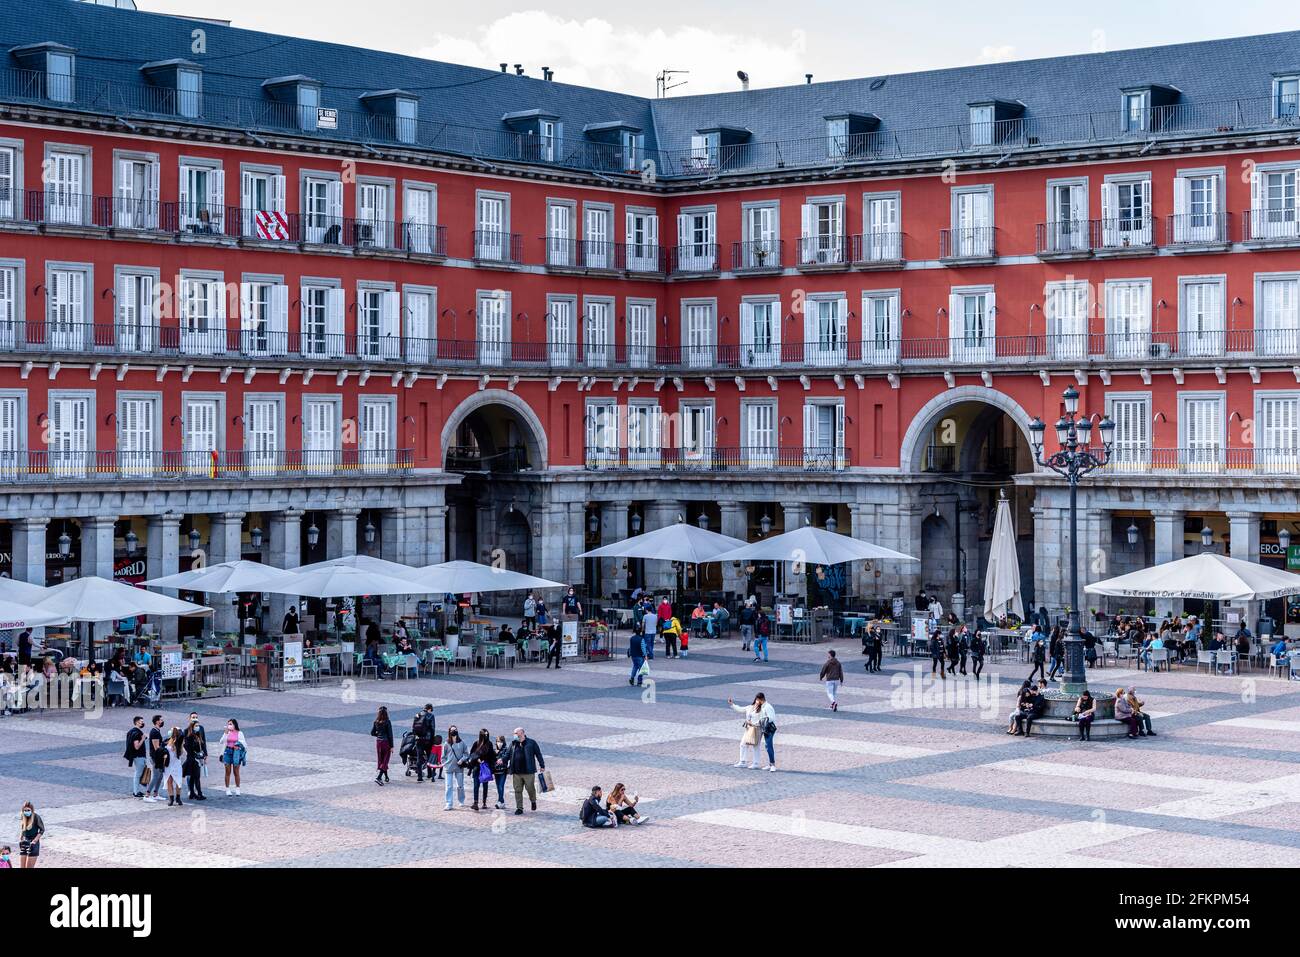 Landschaftlich reizvoll auf dem Plaza Mayor in Madrid, Spanien. Ansicht während der Einschränkungen für die Coronavirus-Covid-19-Pandemie. Sonniger Tag mit blauem Himmel Stockfoto